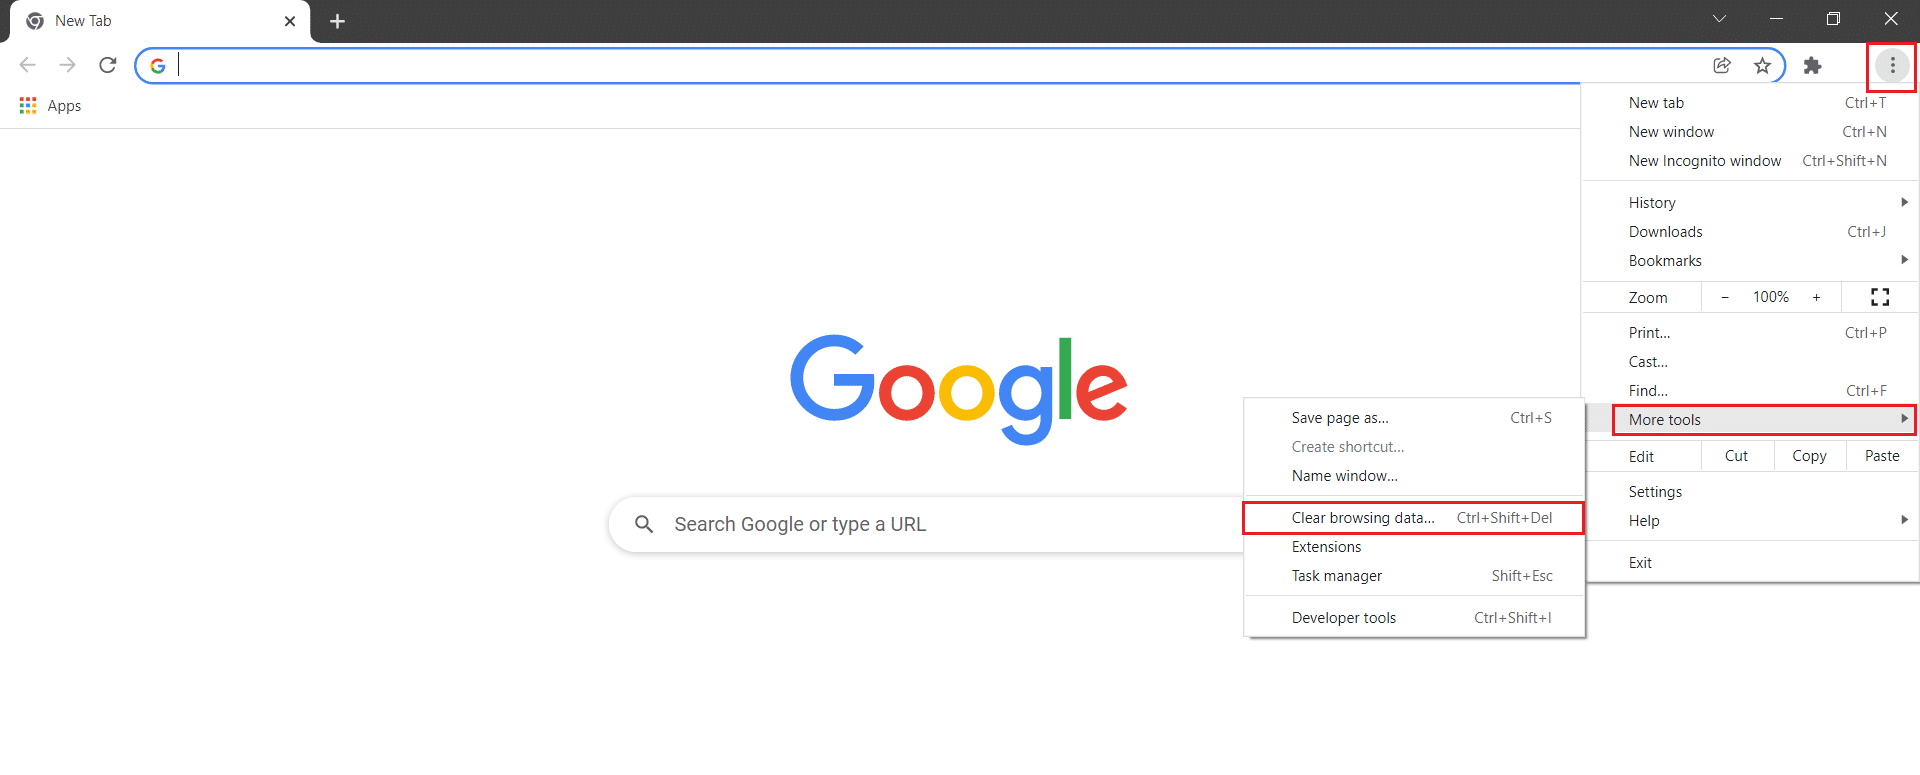 щелкните значок с тремя точками, наведите указатель мыши на дополнительные инструменты и выберите «Очистить данные просмотра в Google Chrome».